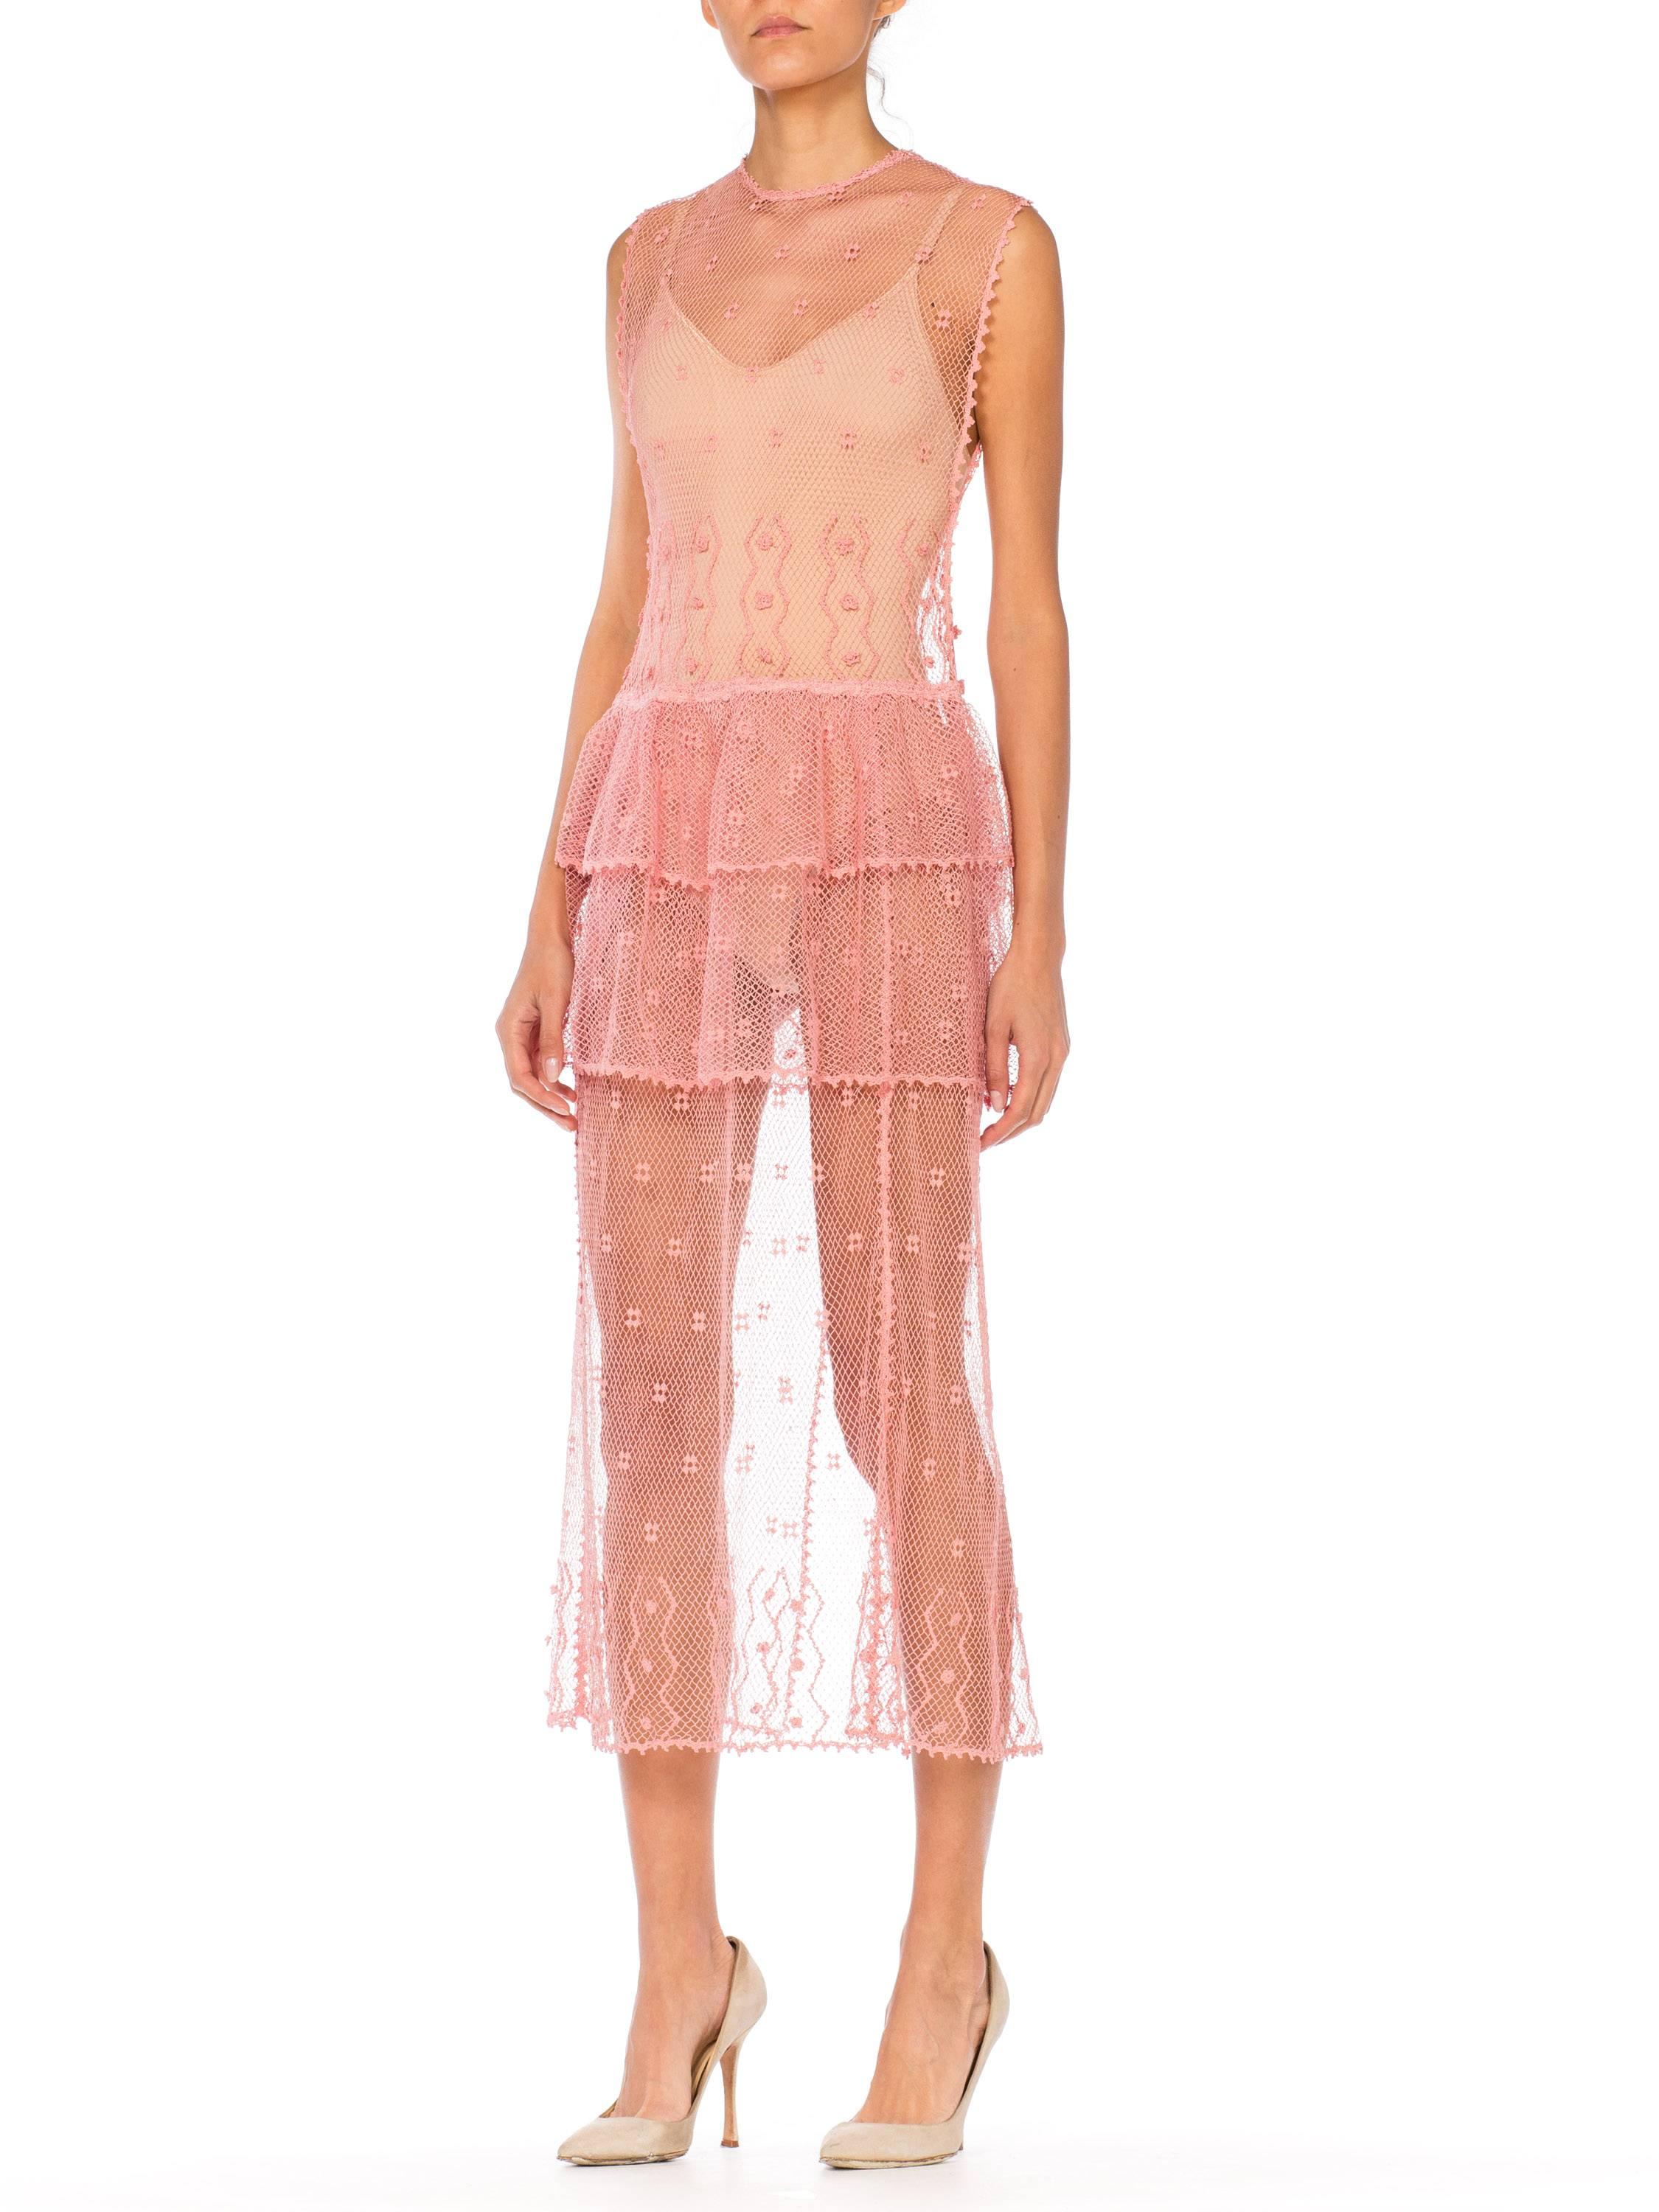 Sheer Pink Hand Crochet Cotton Net Dress, 1980s   2